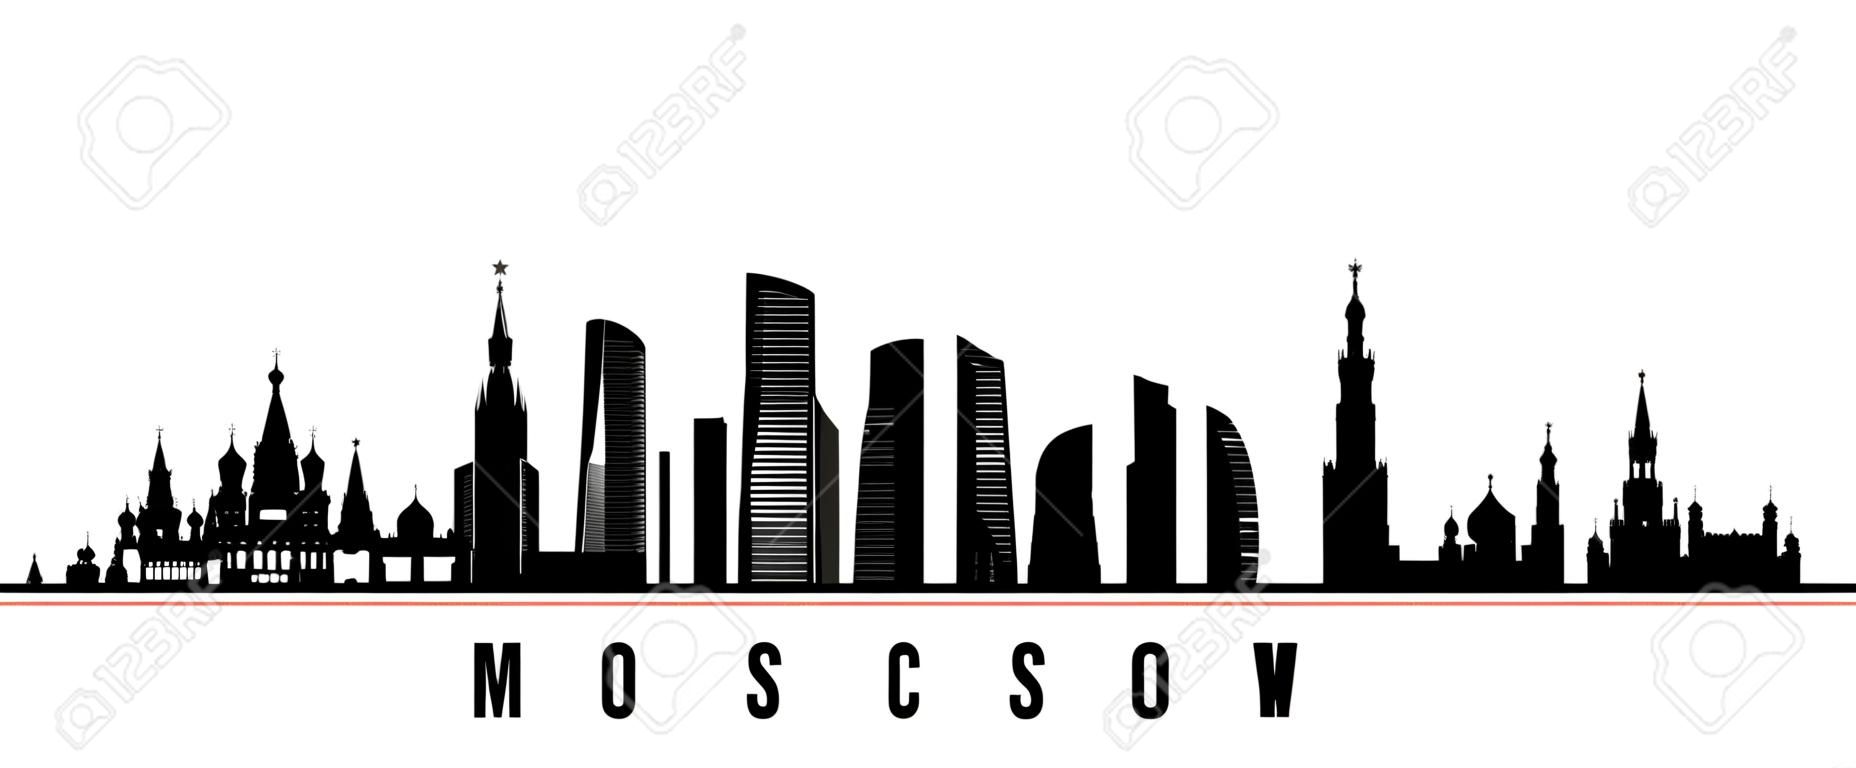 모스크바 도시 스카이 라인 가로 배너입니다. 러시아 모스크바 시의 흑백 실루엣. 디자인을 위한 벡터 템플릿입니다.